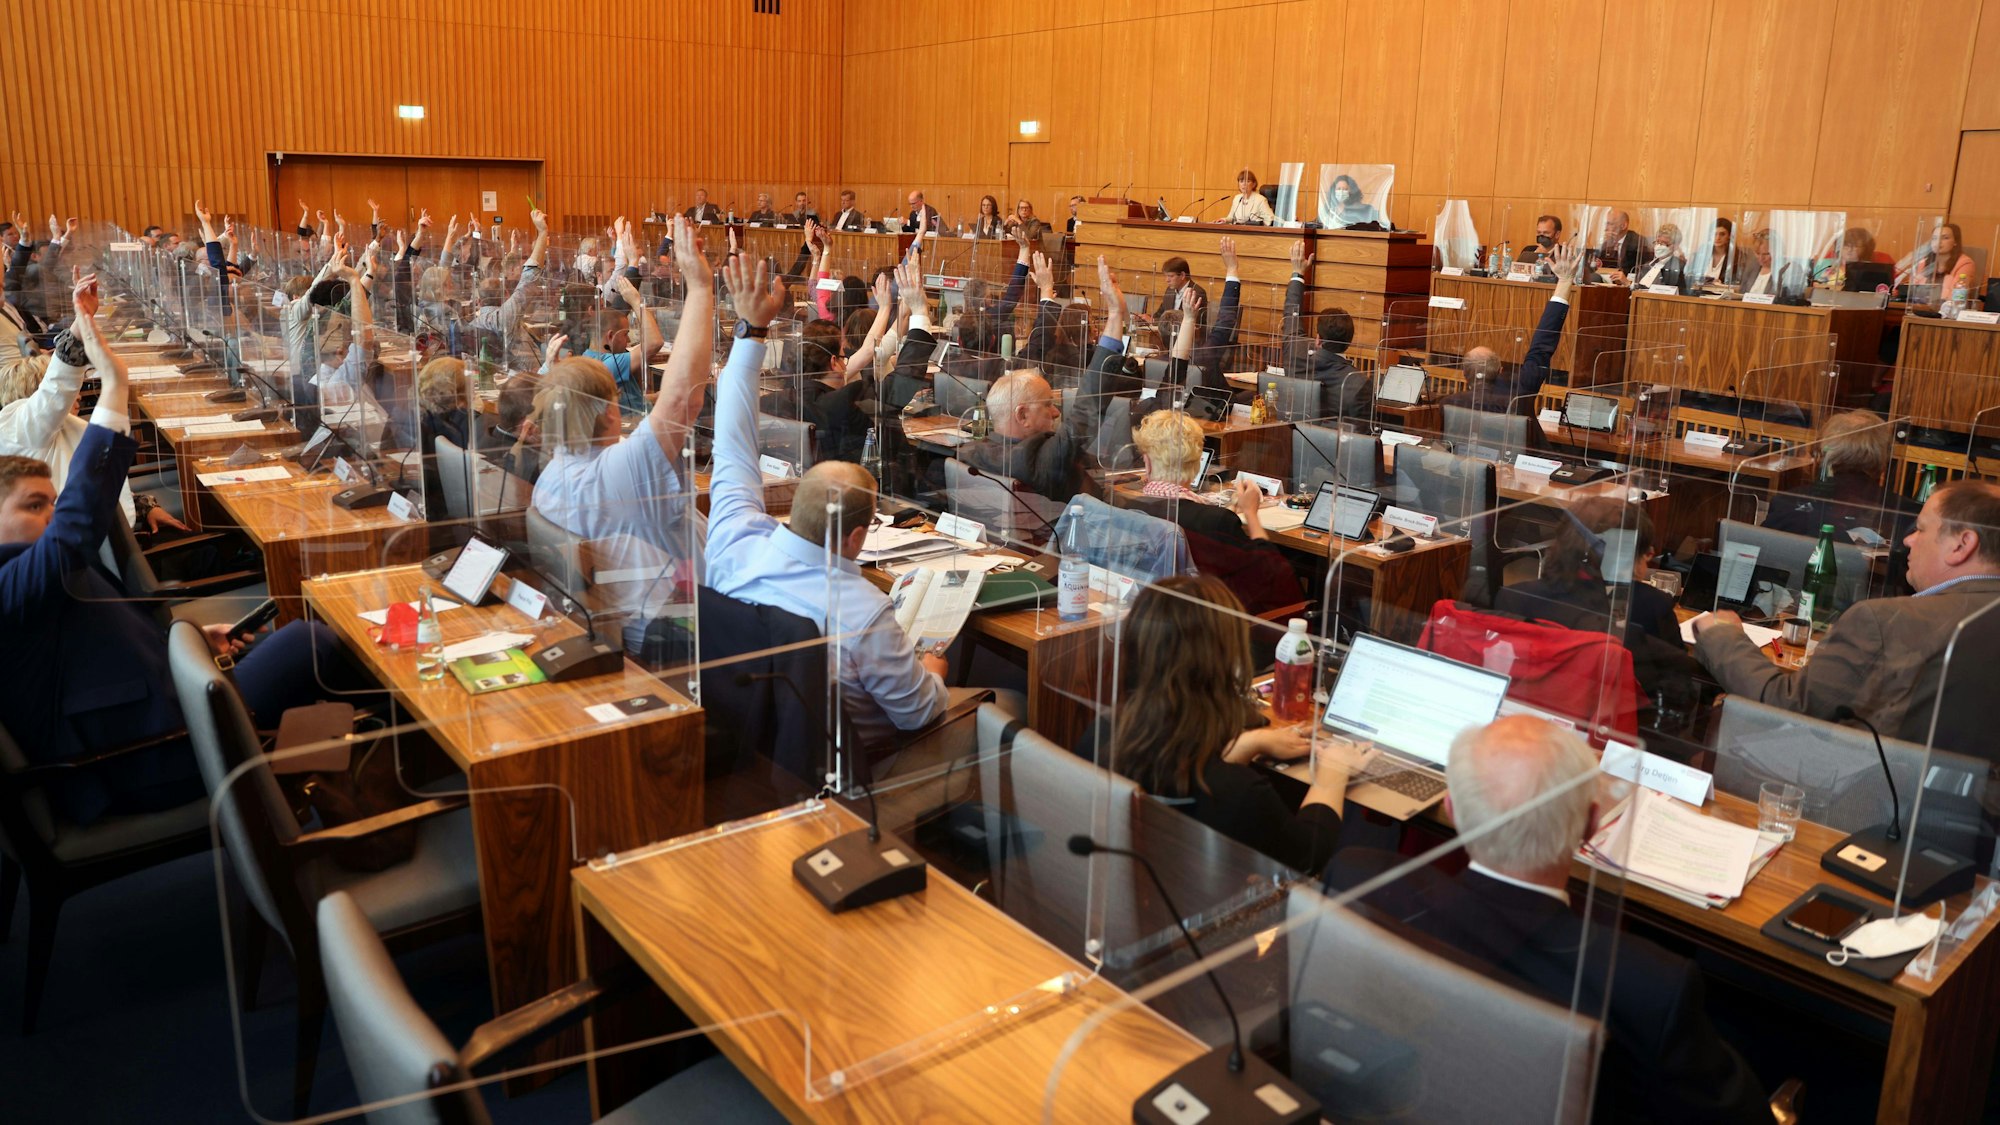 Die Mitglieder des Kölner Stadtrats sitzen an Tischen und heben die Hand für eine Abstimmung. An der Wand befindet sich die Tribüne des Präsidiums.